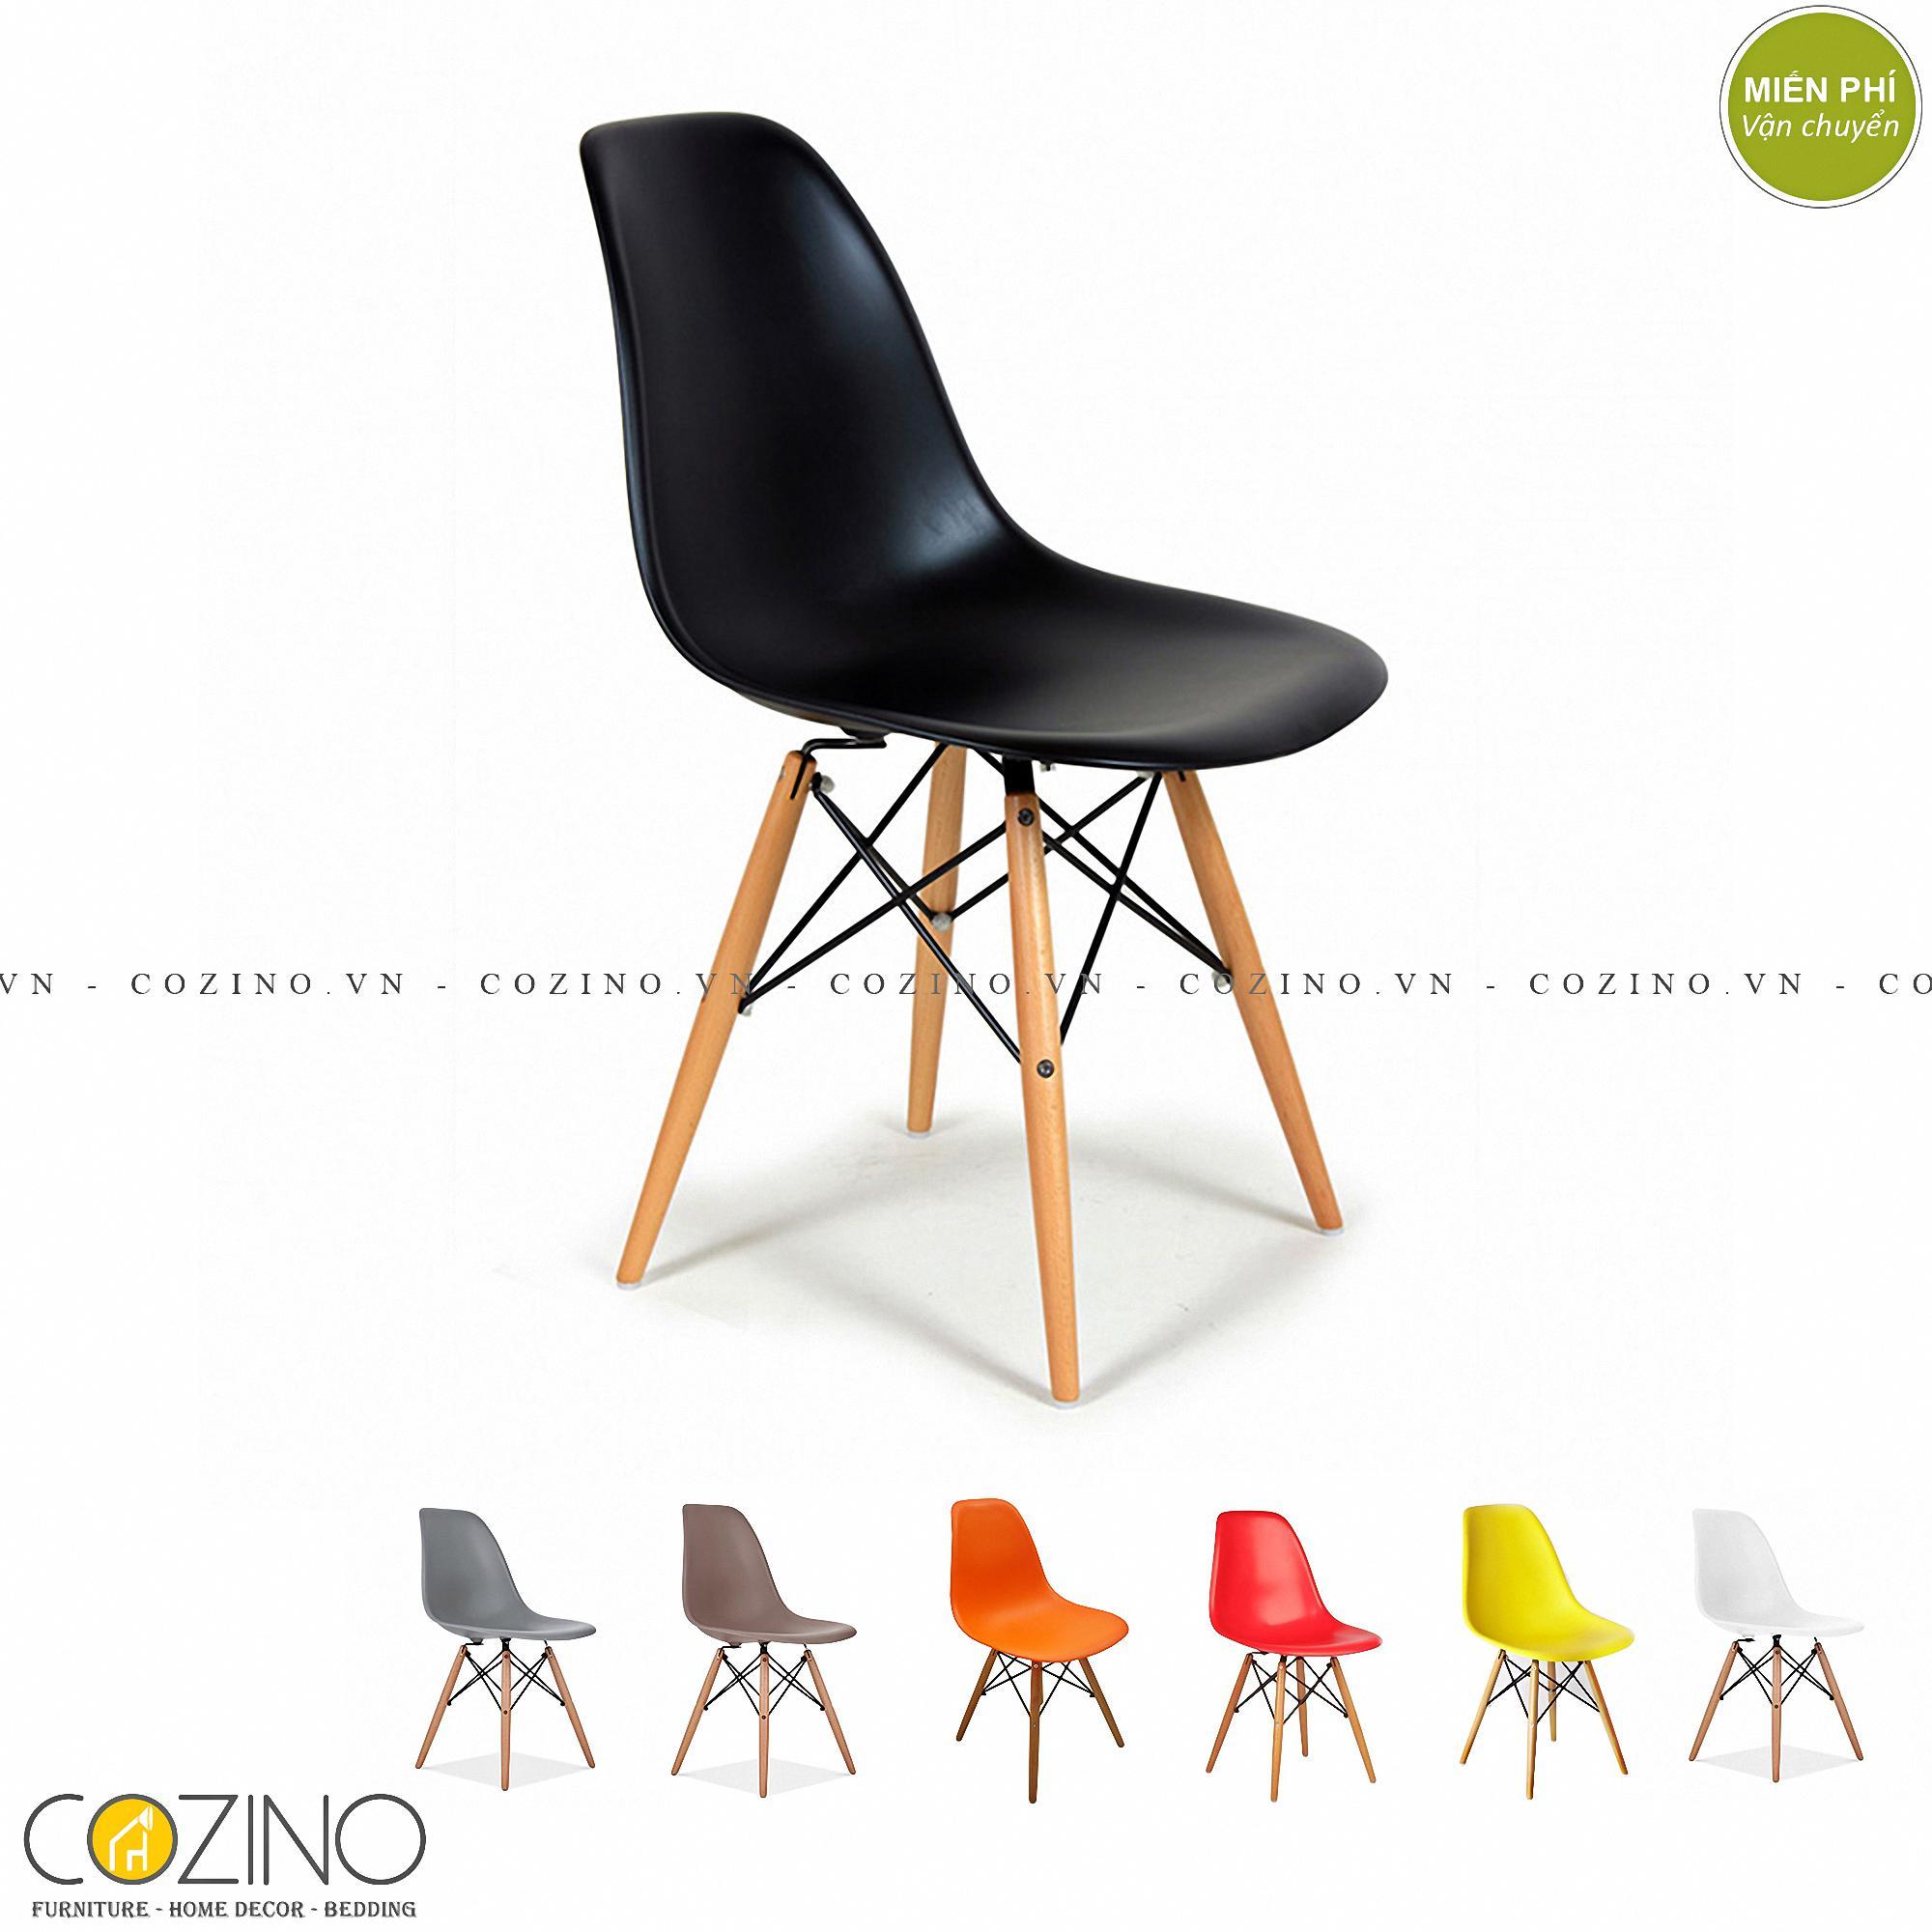 Ghế CZN-Eames đen chân gỗ